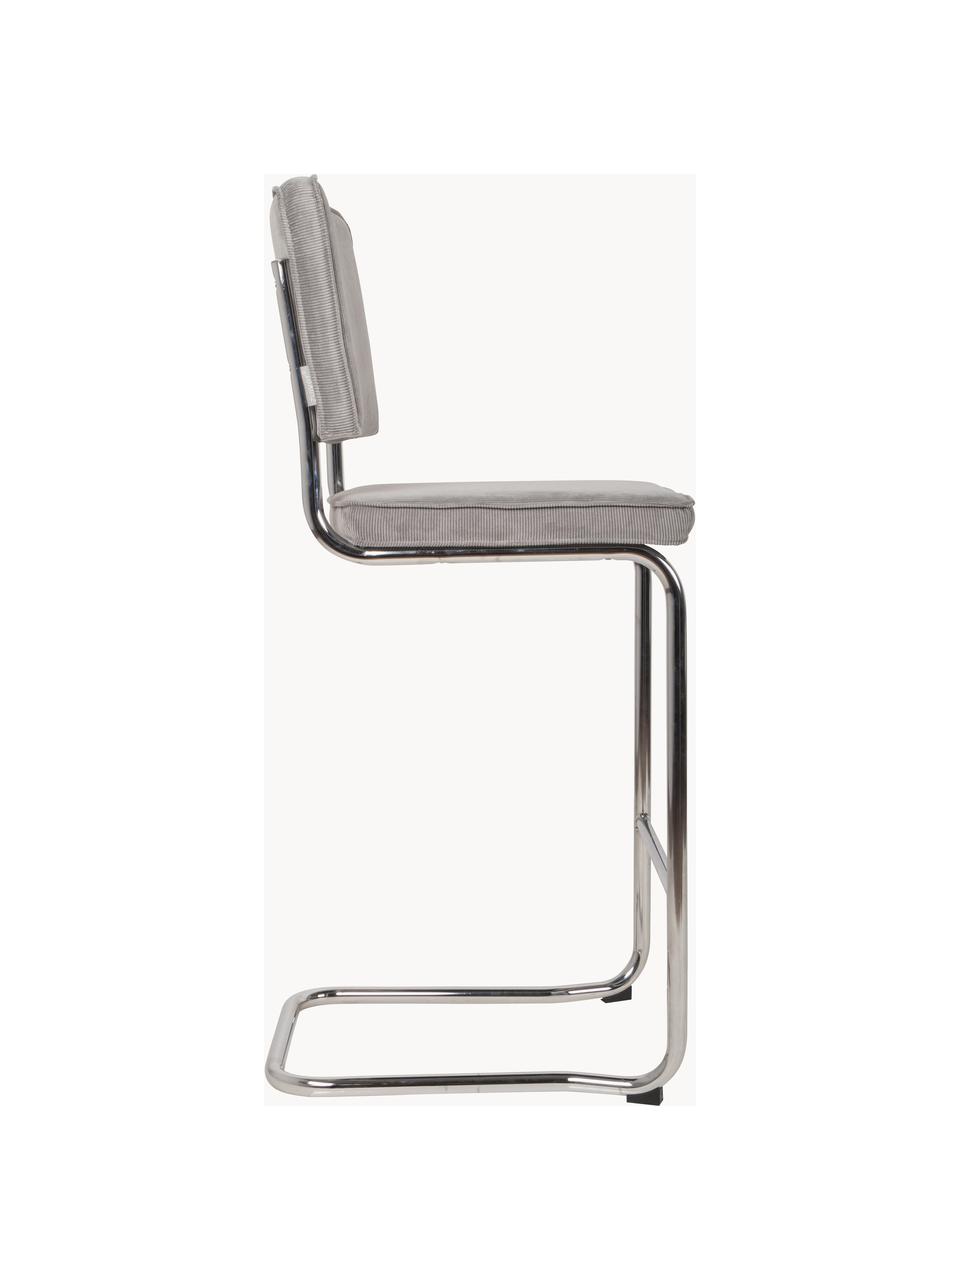 Barová židle Ridge King Barstool, Světle šedá, Š 50 cm, V 113 cm